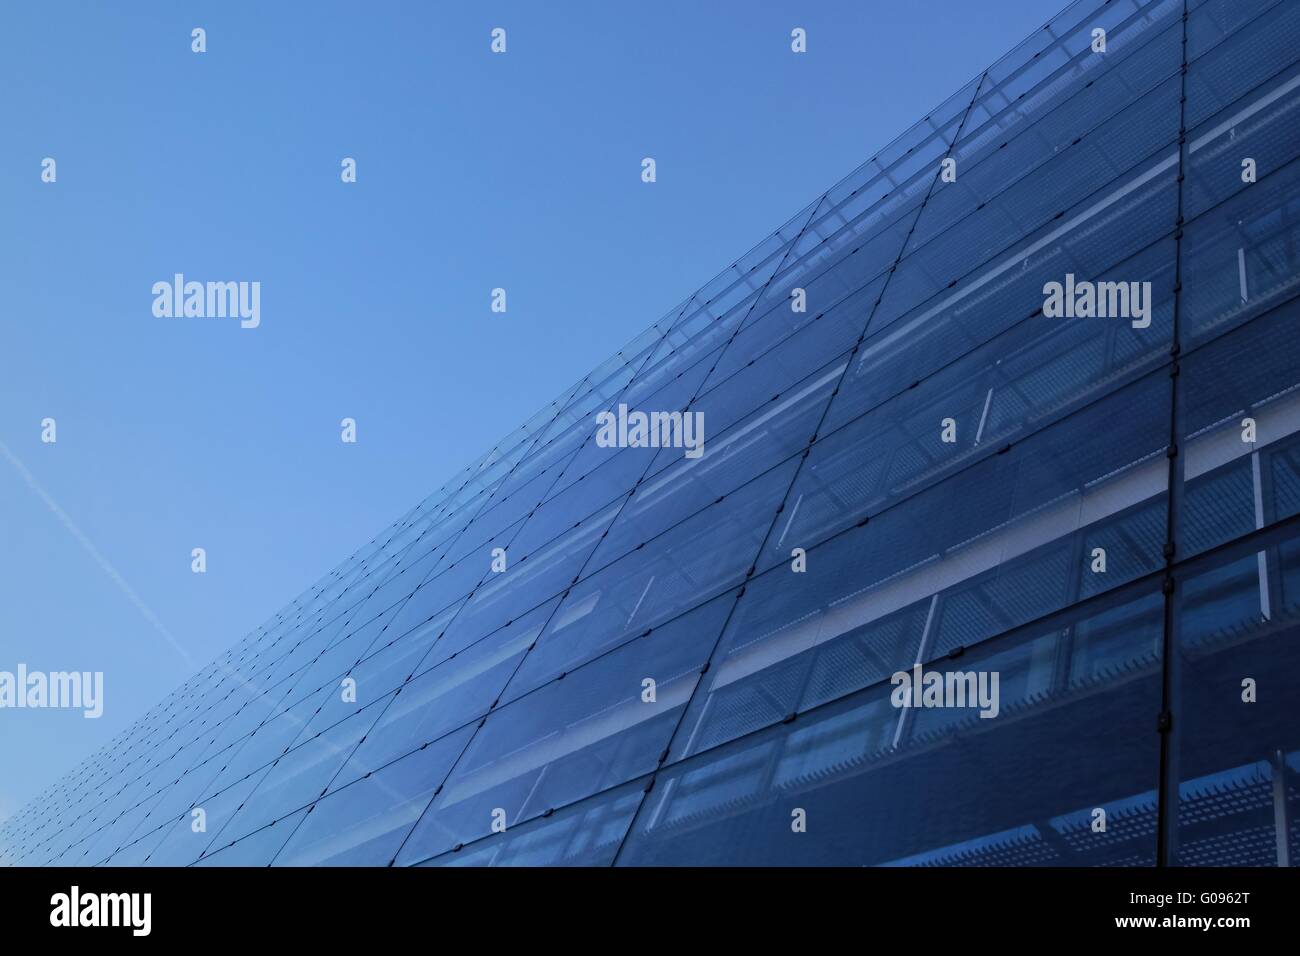 Glass facade Stock Photo